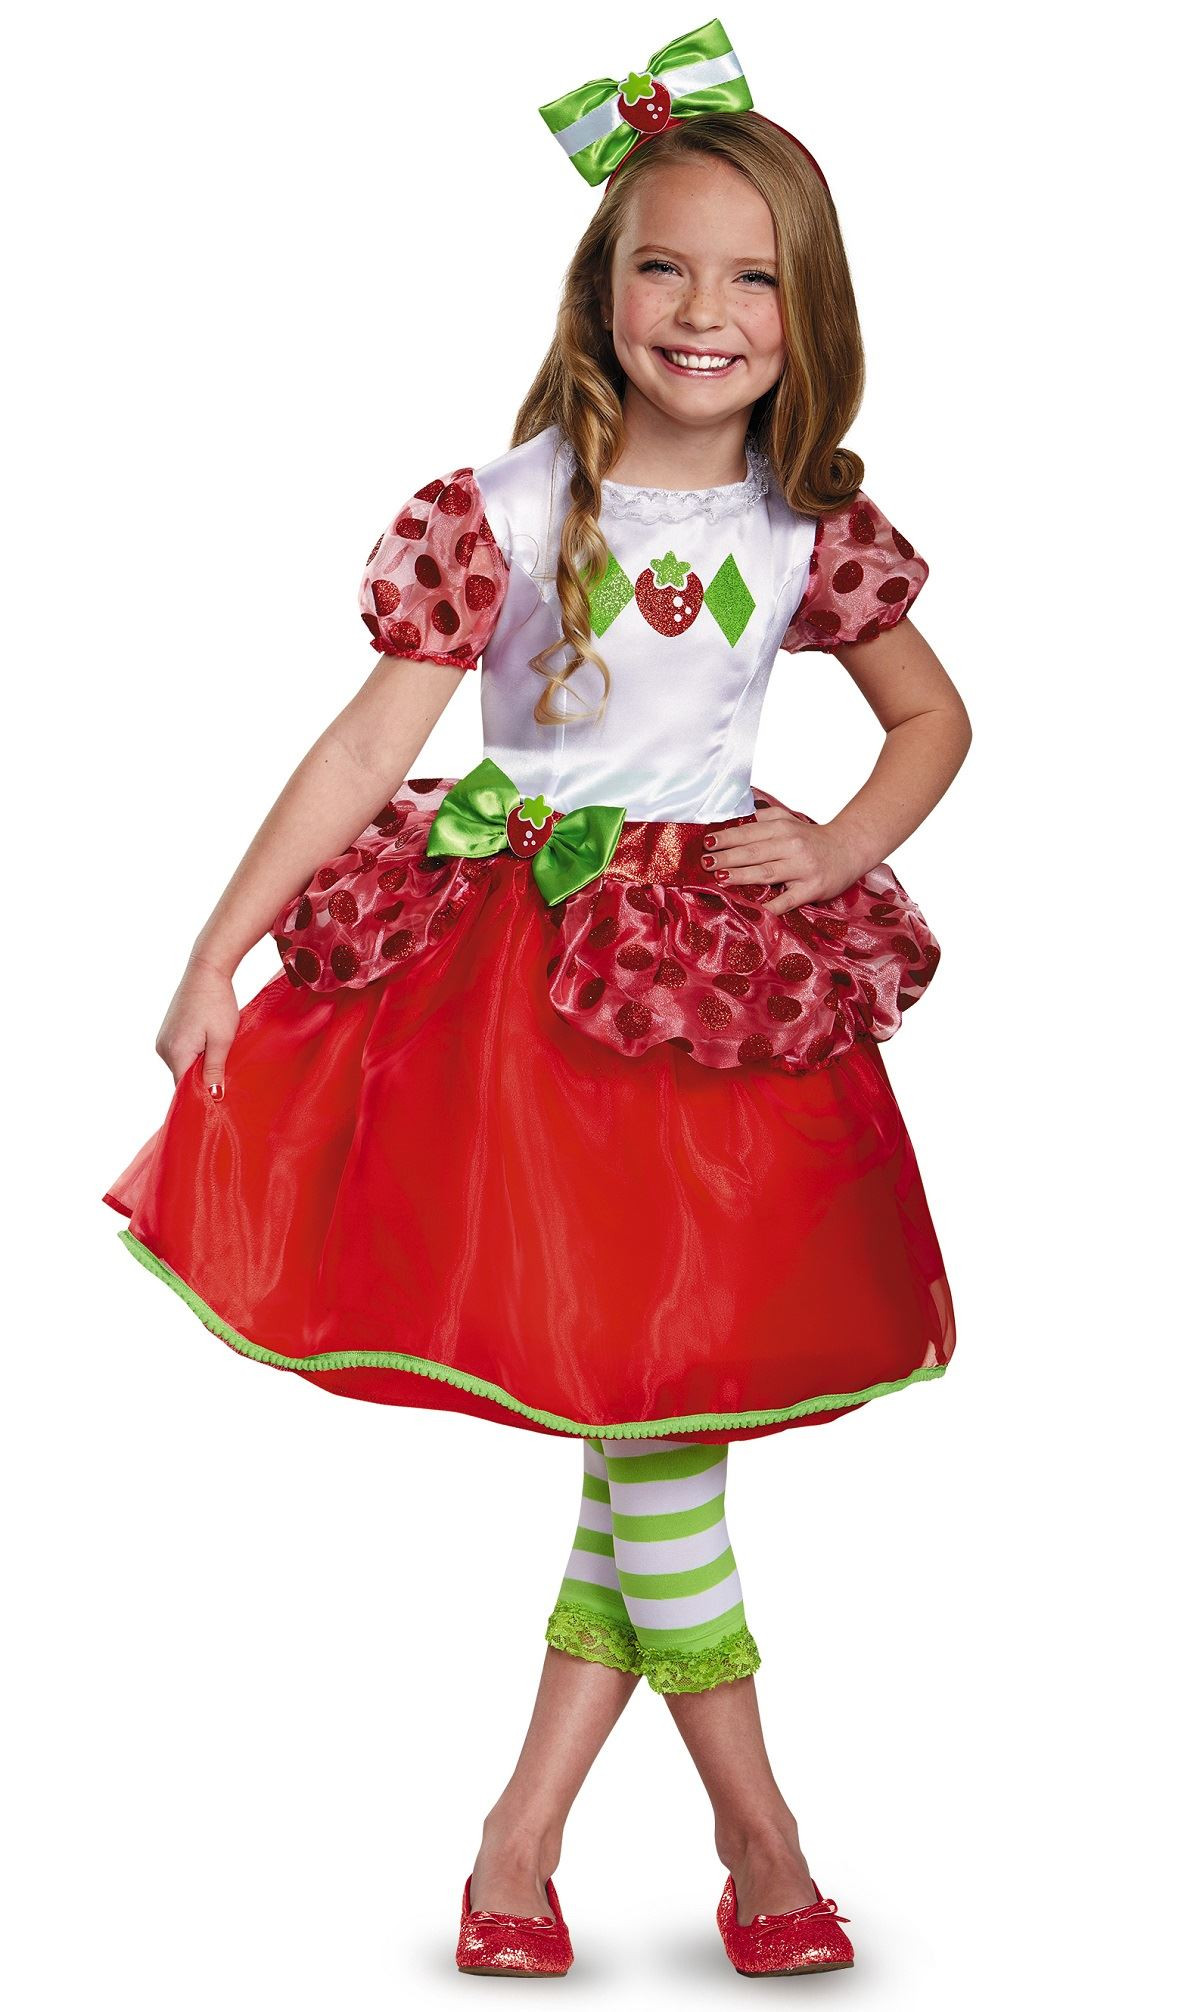 Strawberry Short Cake Halloween
 Kids Strawberry Shortcake Girls Costume $37 99